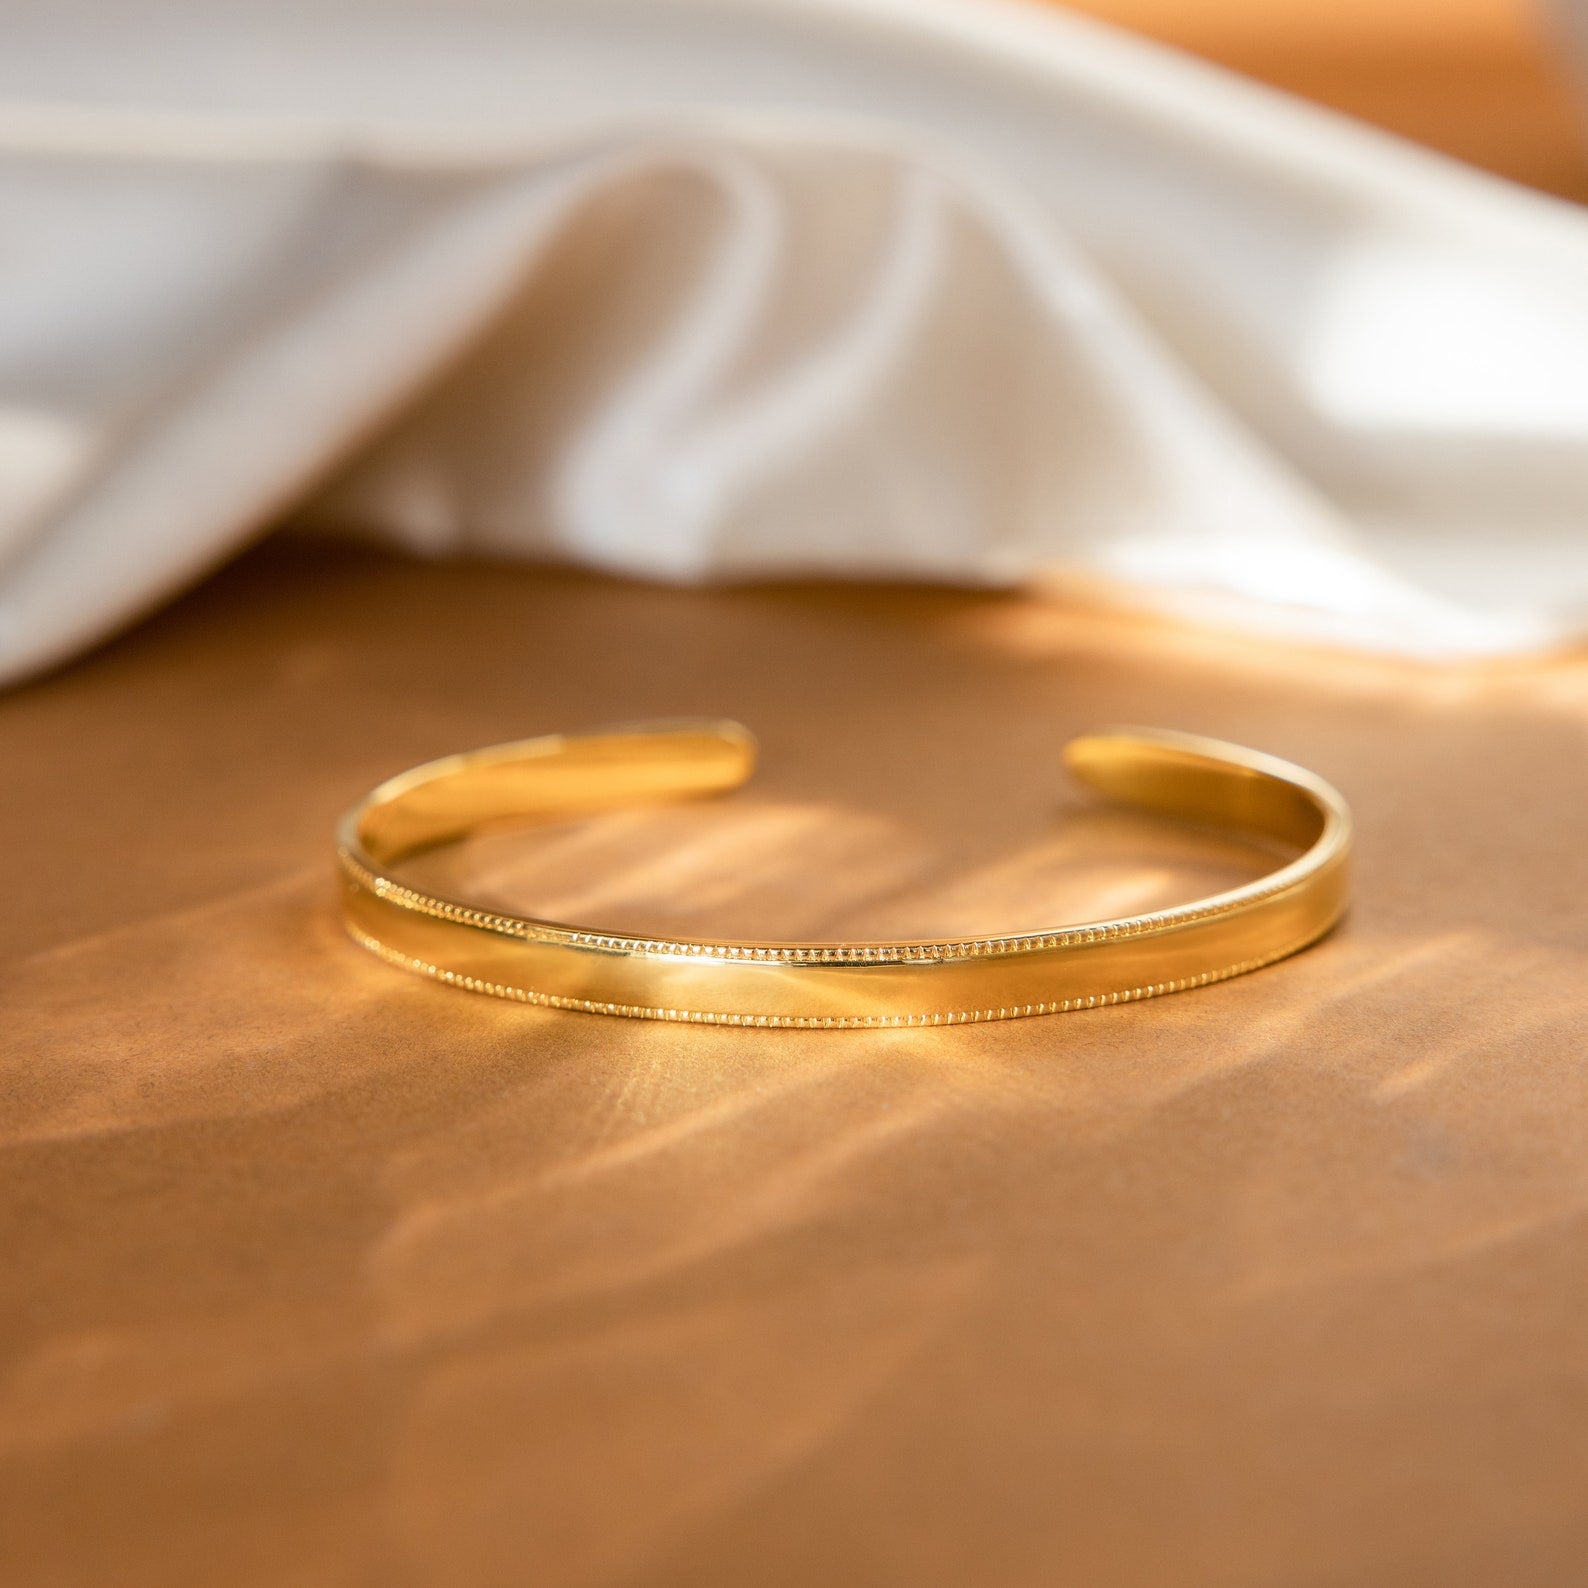 Italian Gold Woven Cuff Bracelet in 14k Gold over Sterling Silver - Macy's